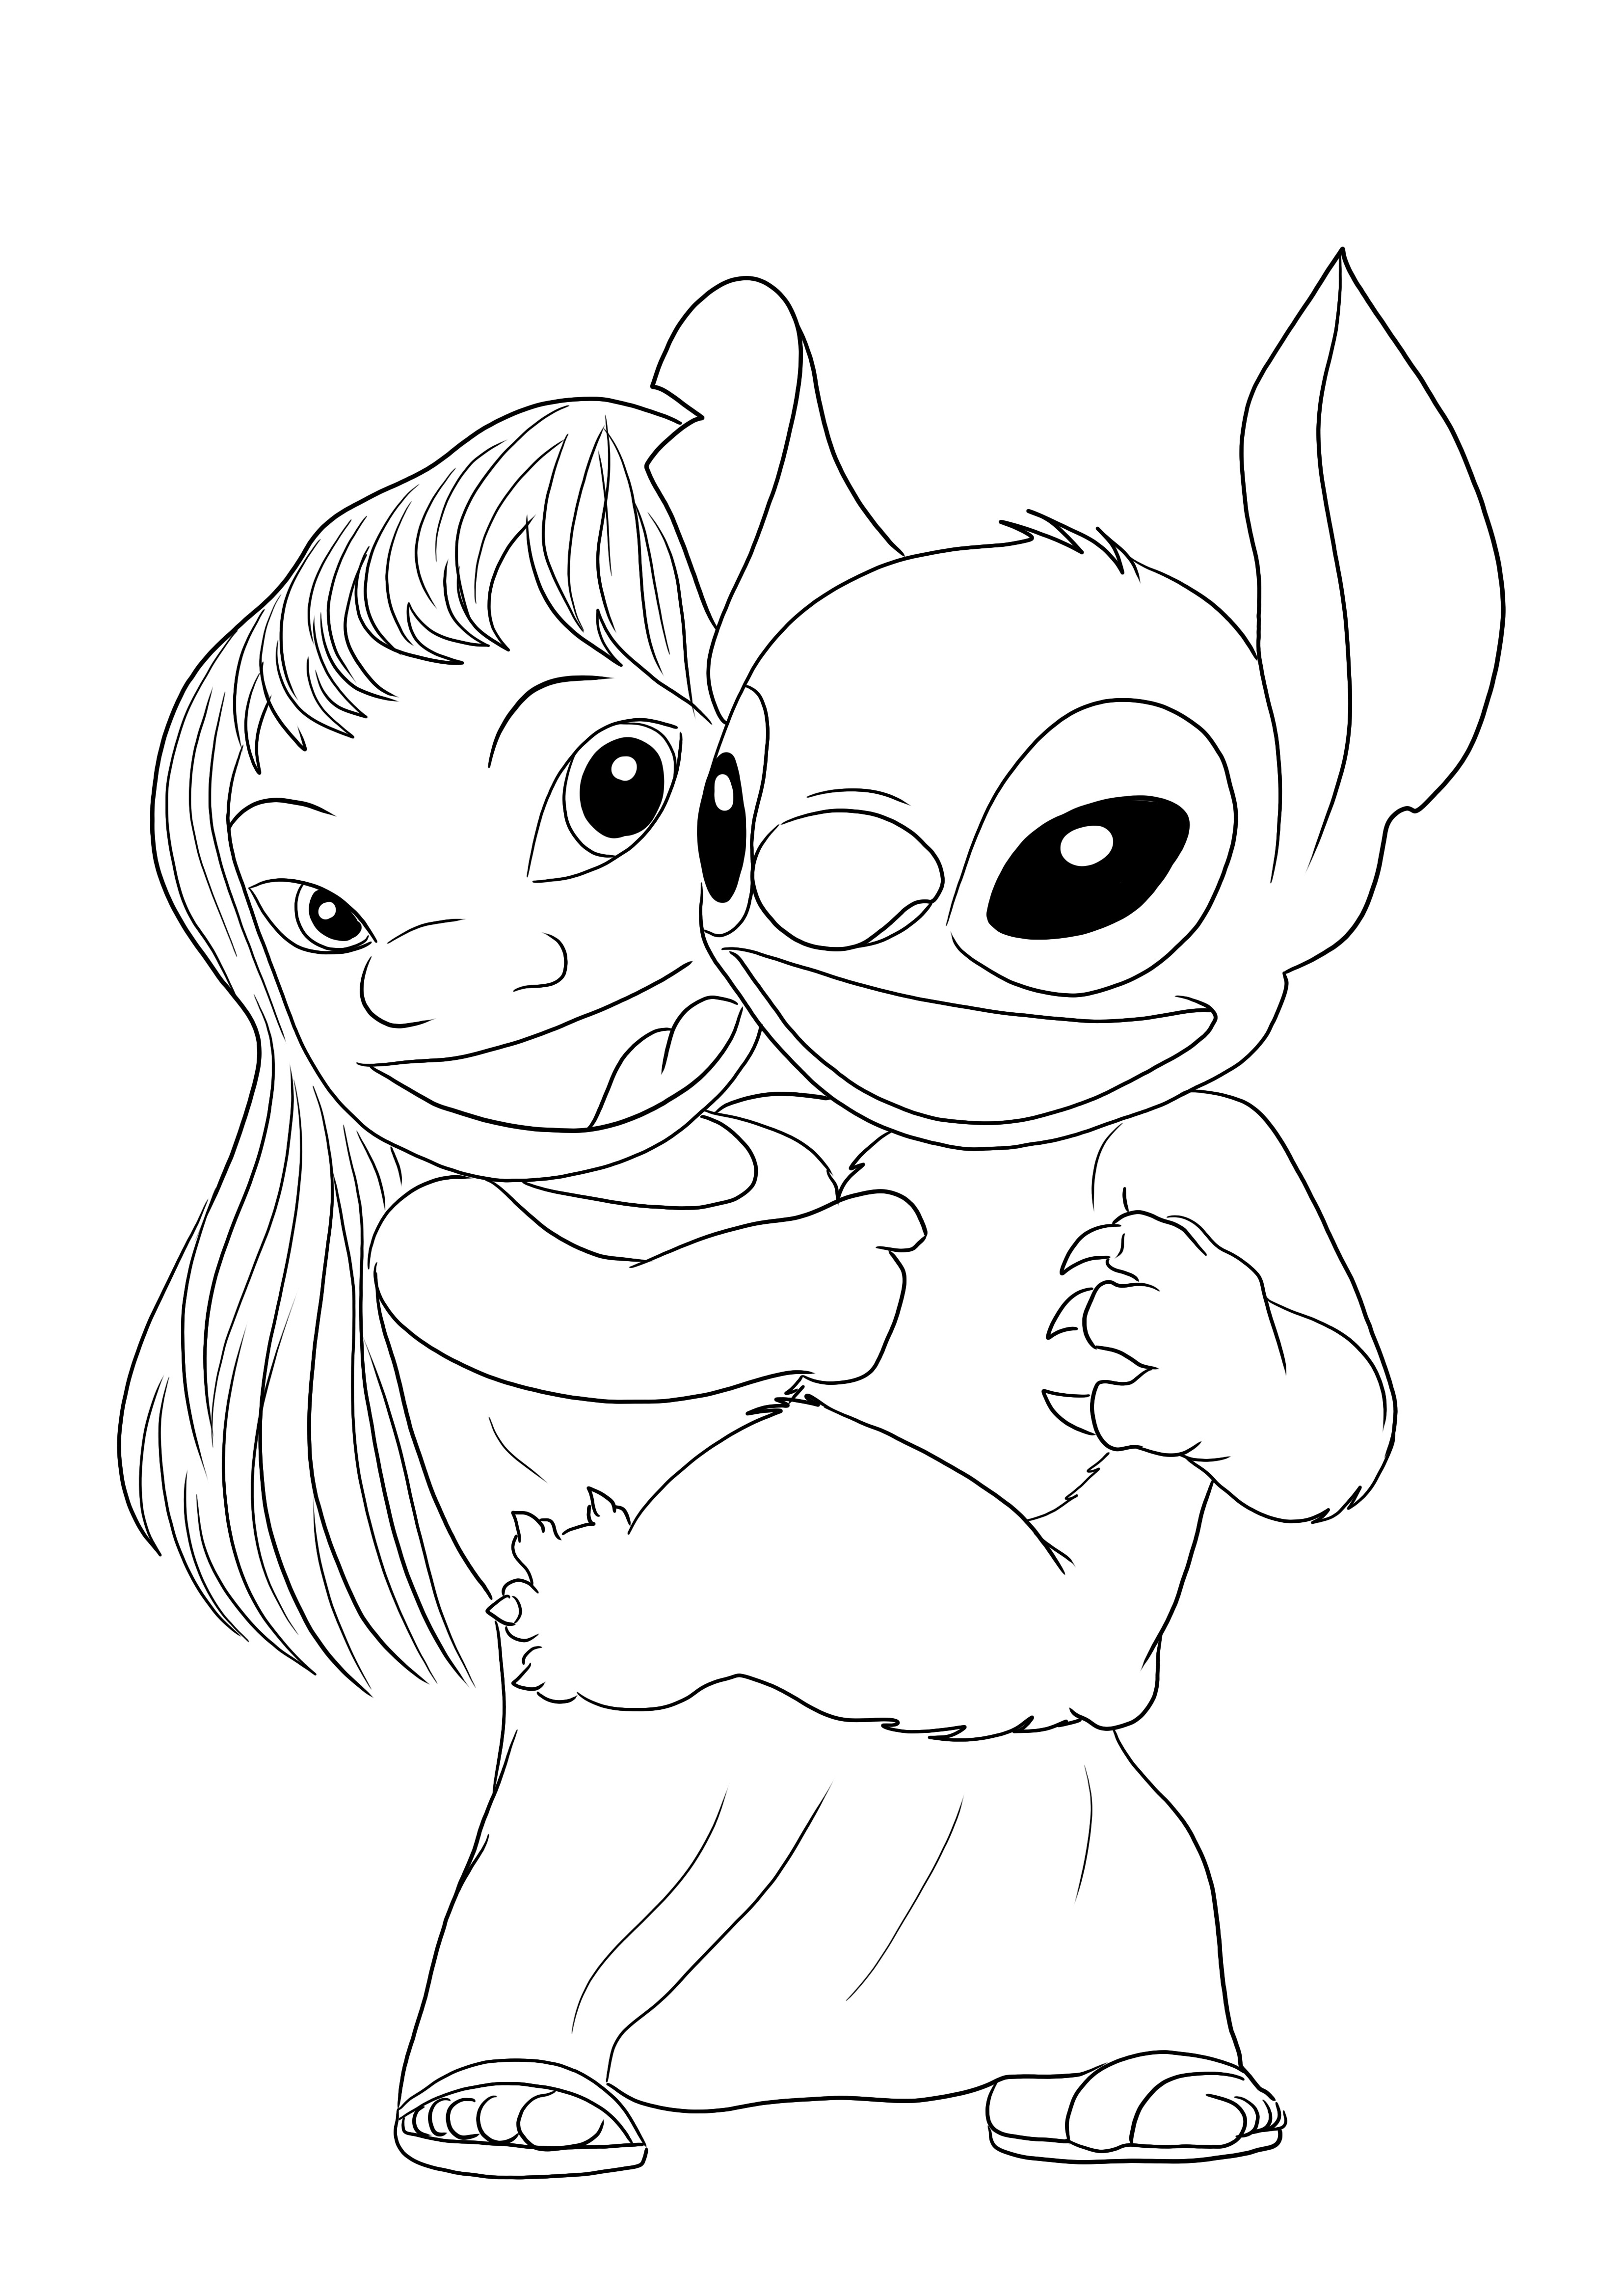 Gambar mewarnai Lilo&Stitch tertawa untuk dicetak secara gratis dan mudah diwarnai